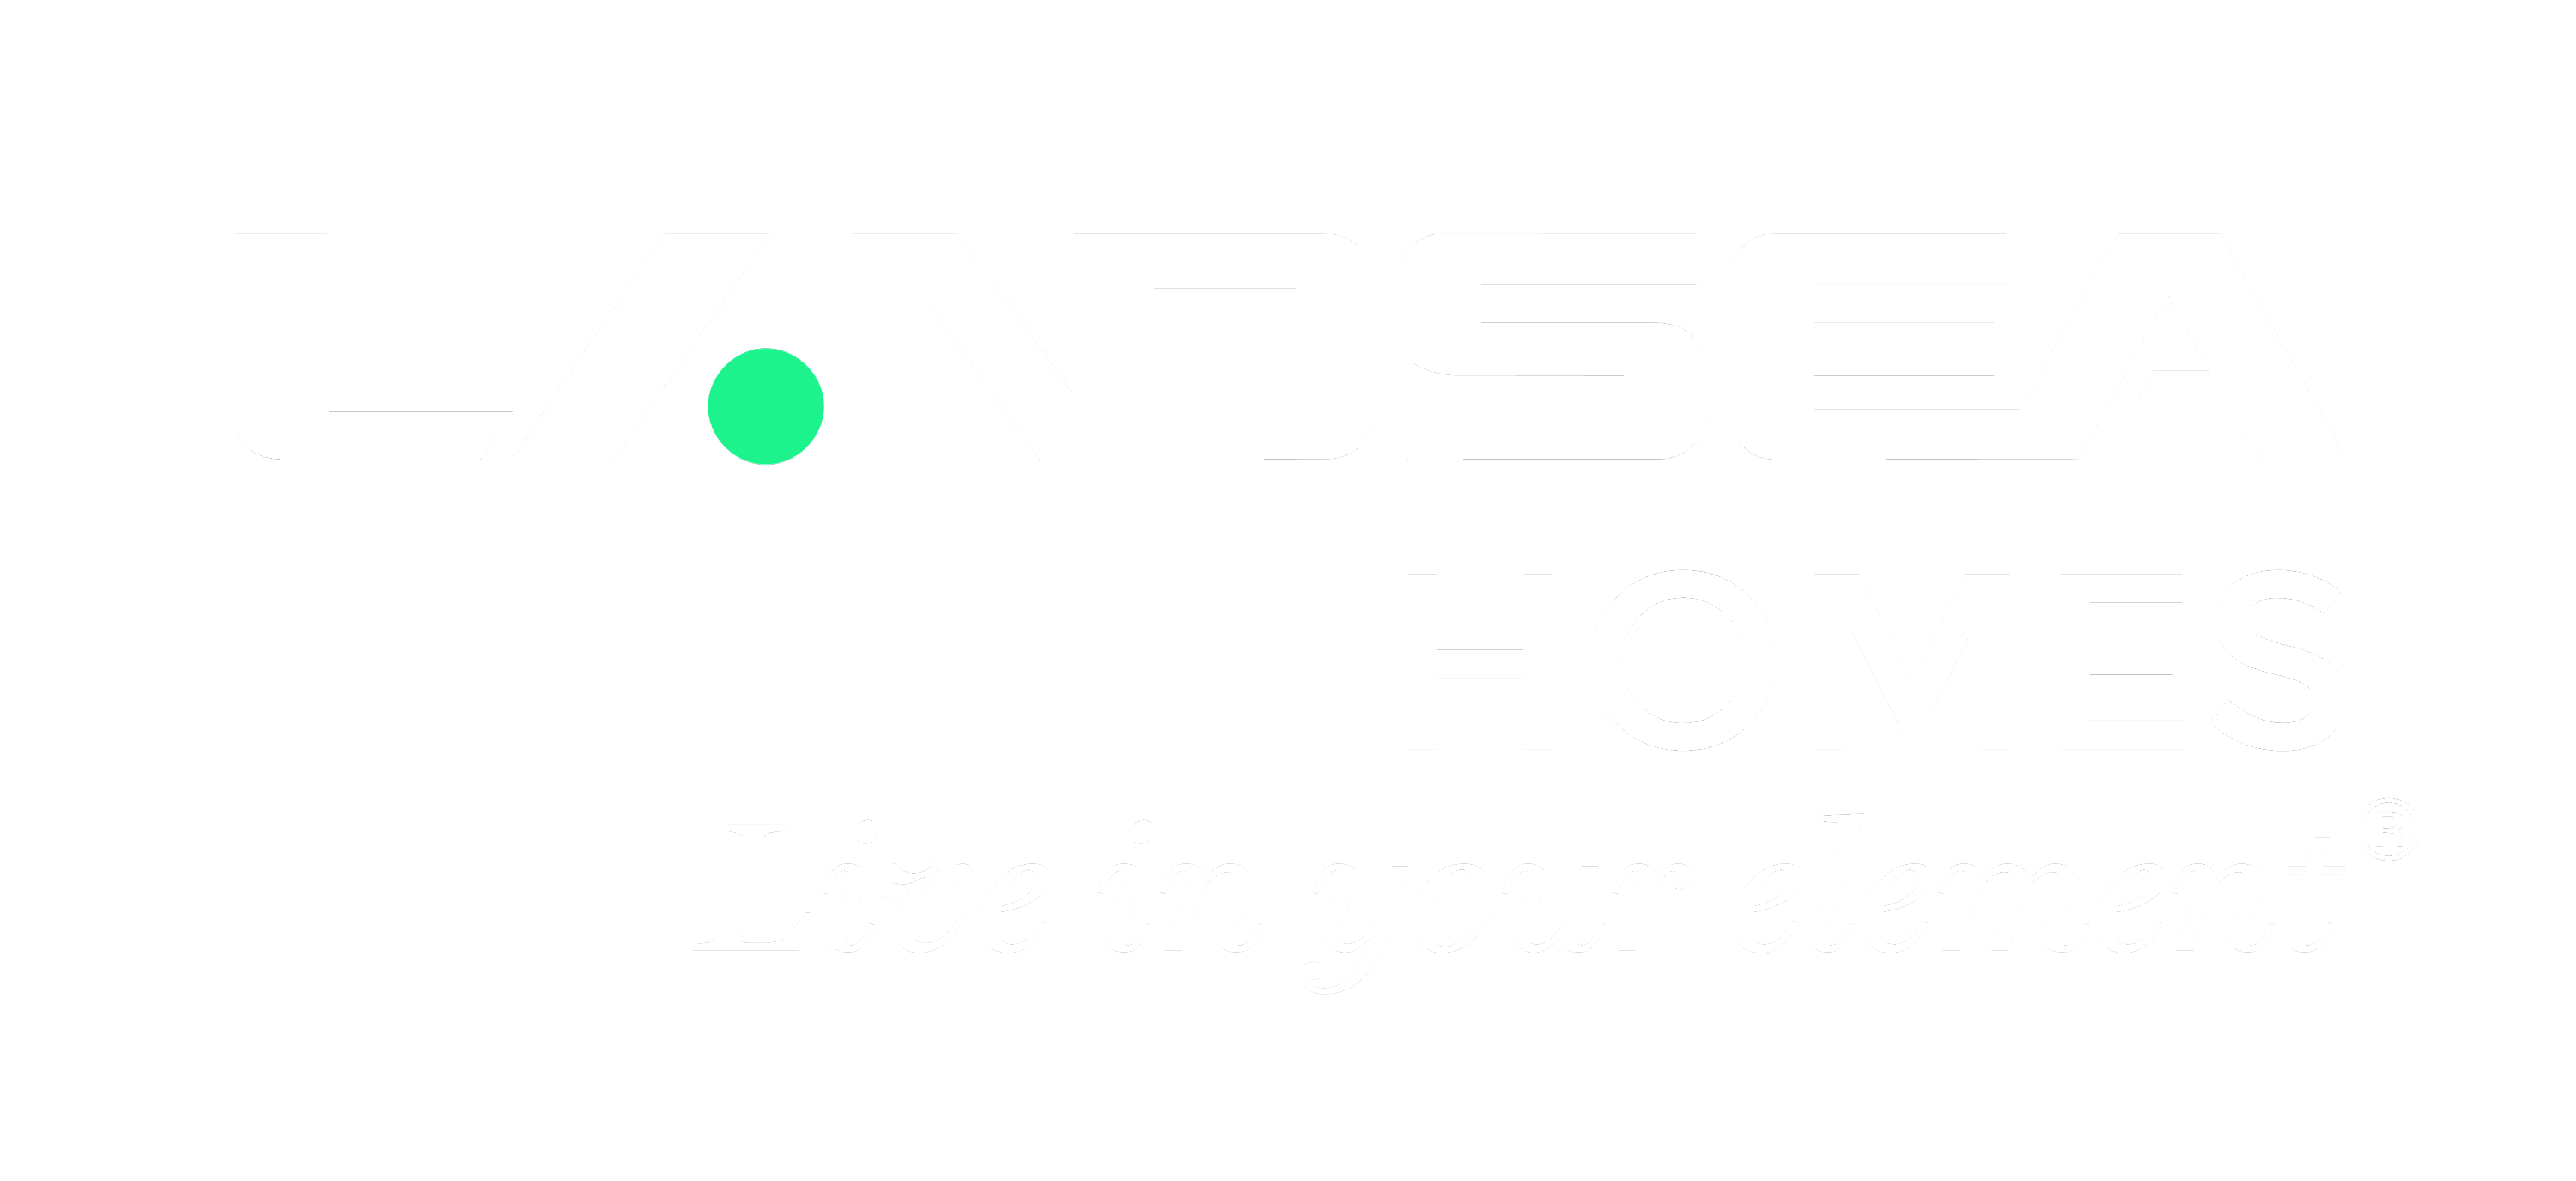 Verrado Logo - Landsea Homes | Verrado